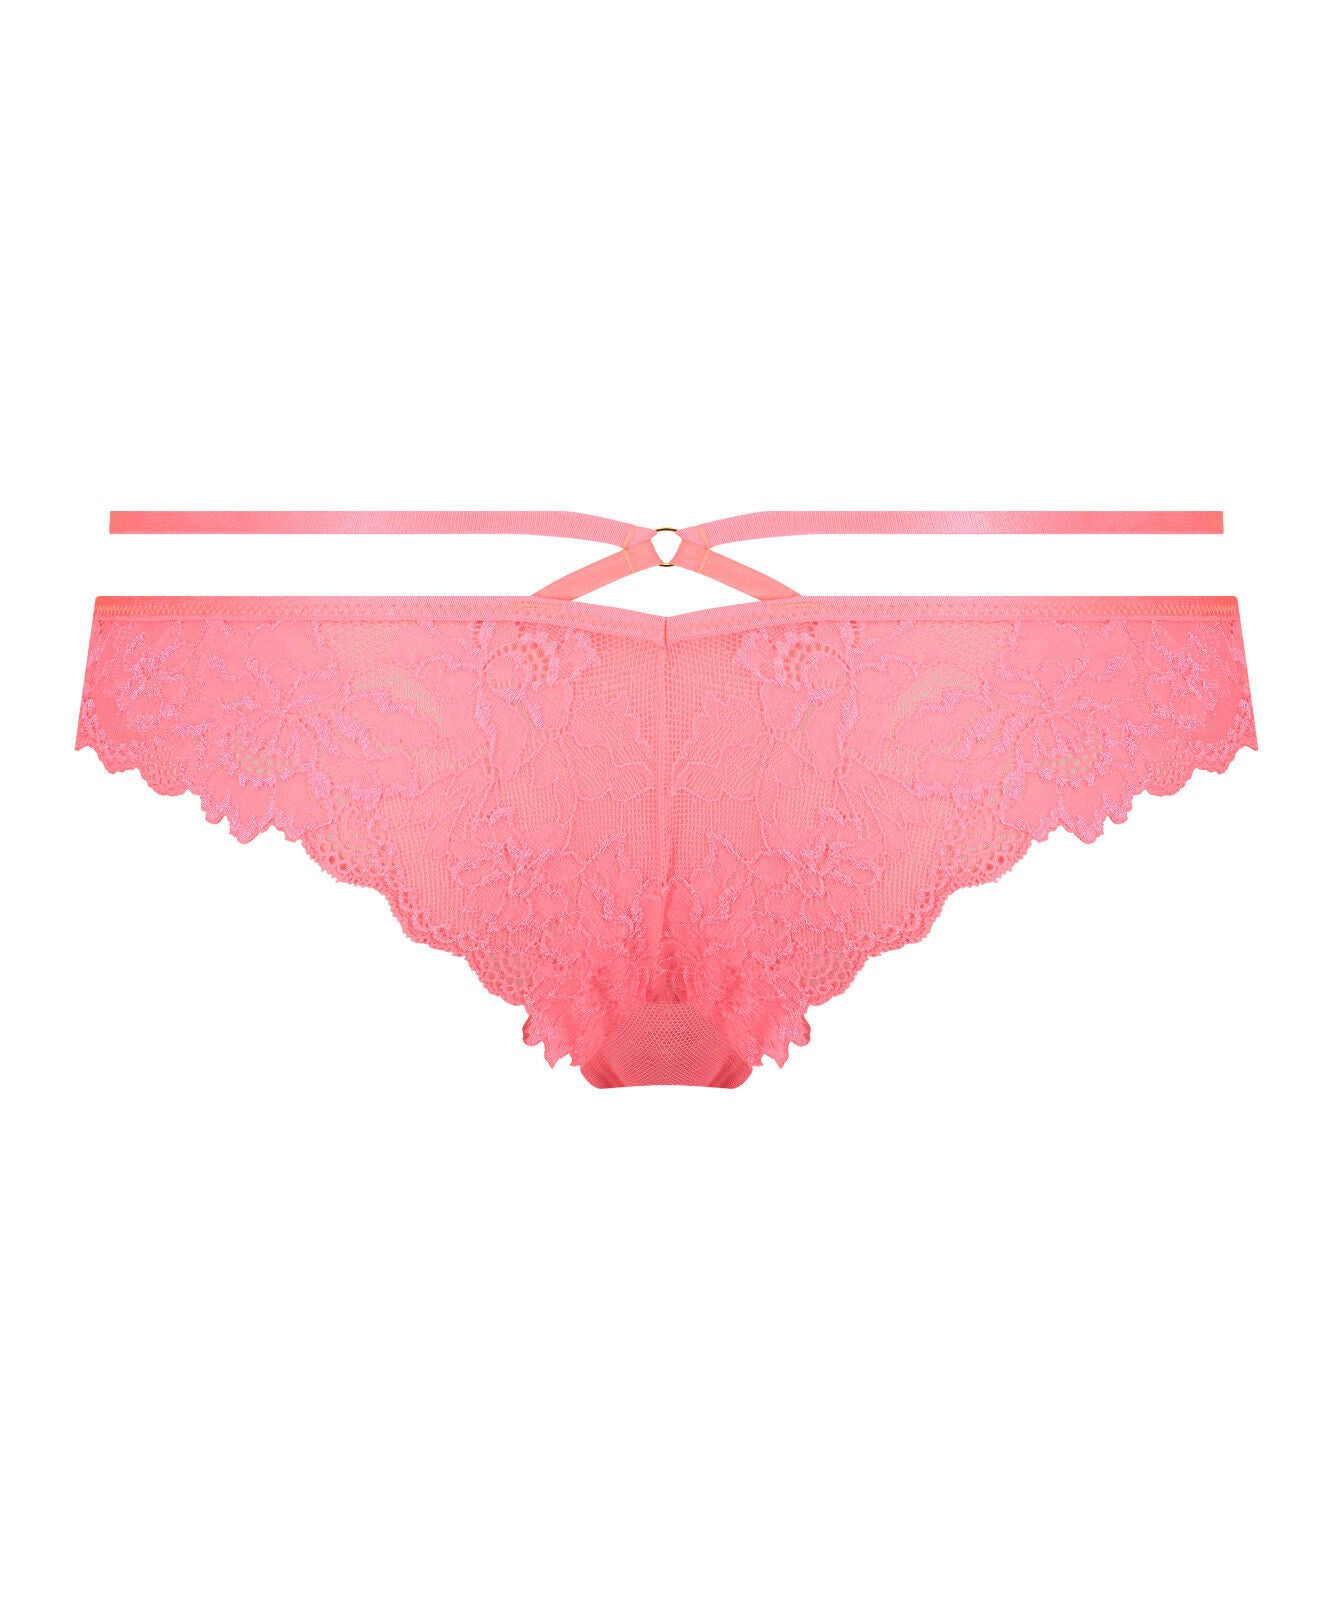 Hunkemoller Sosha Pink Brazilian Pants Size 6